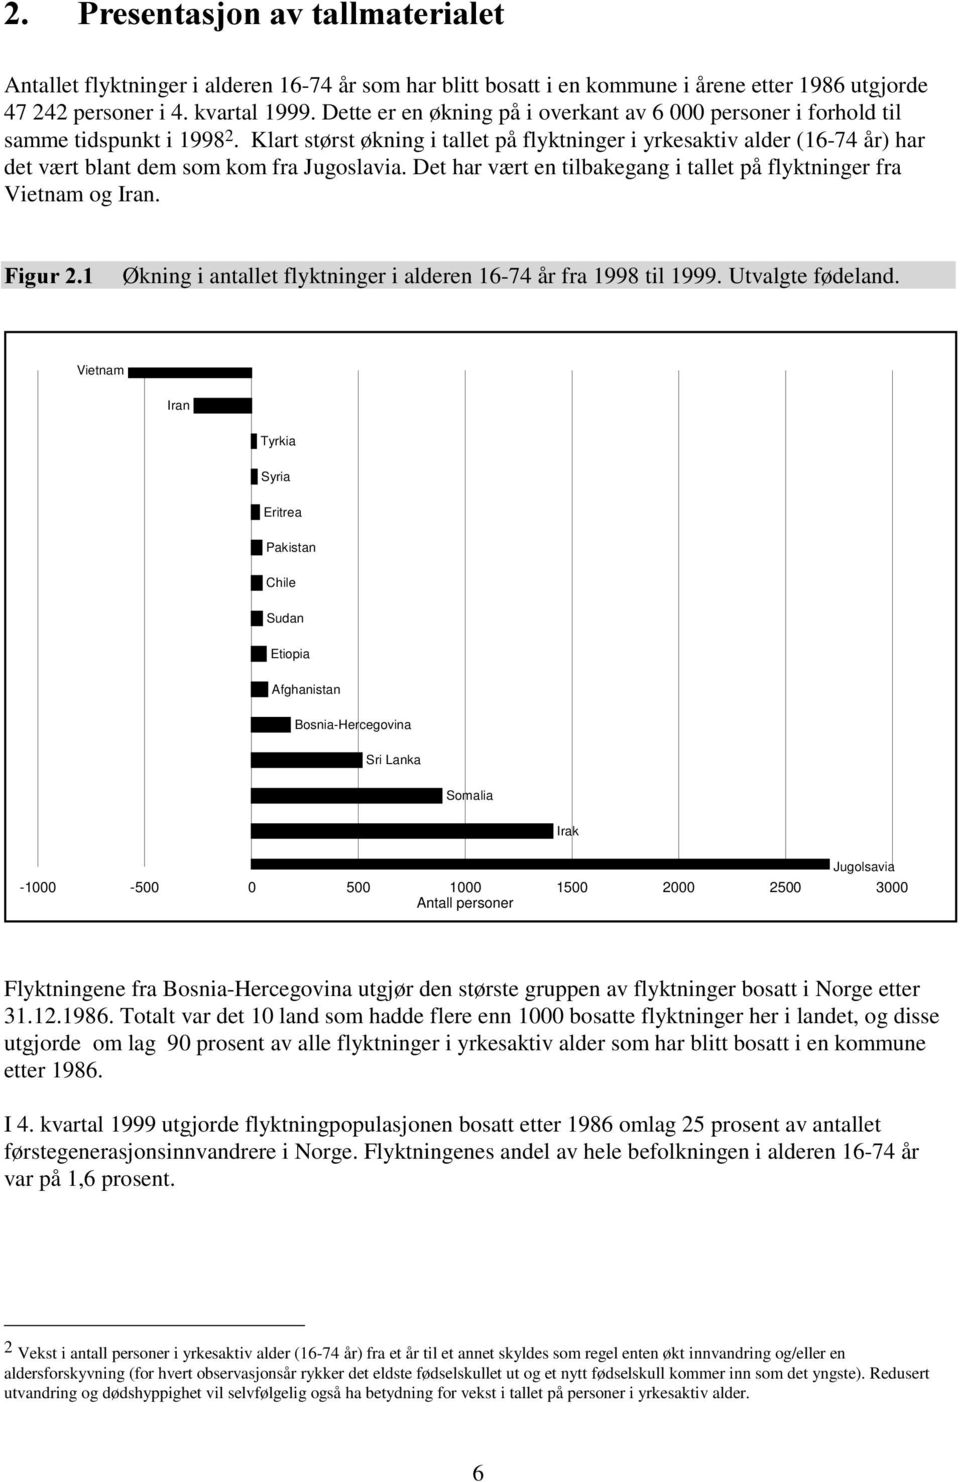 Klart størst økning i tallet på flyktninger i yrkesaktiv alder (16-74 år) har det vært blant dem som kom fra Jugoslavia. Det har vært en tilbakegang i tallet på flyktninger fra Vietnam og Iran.